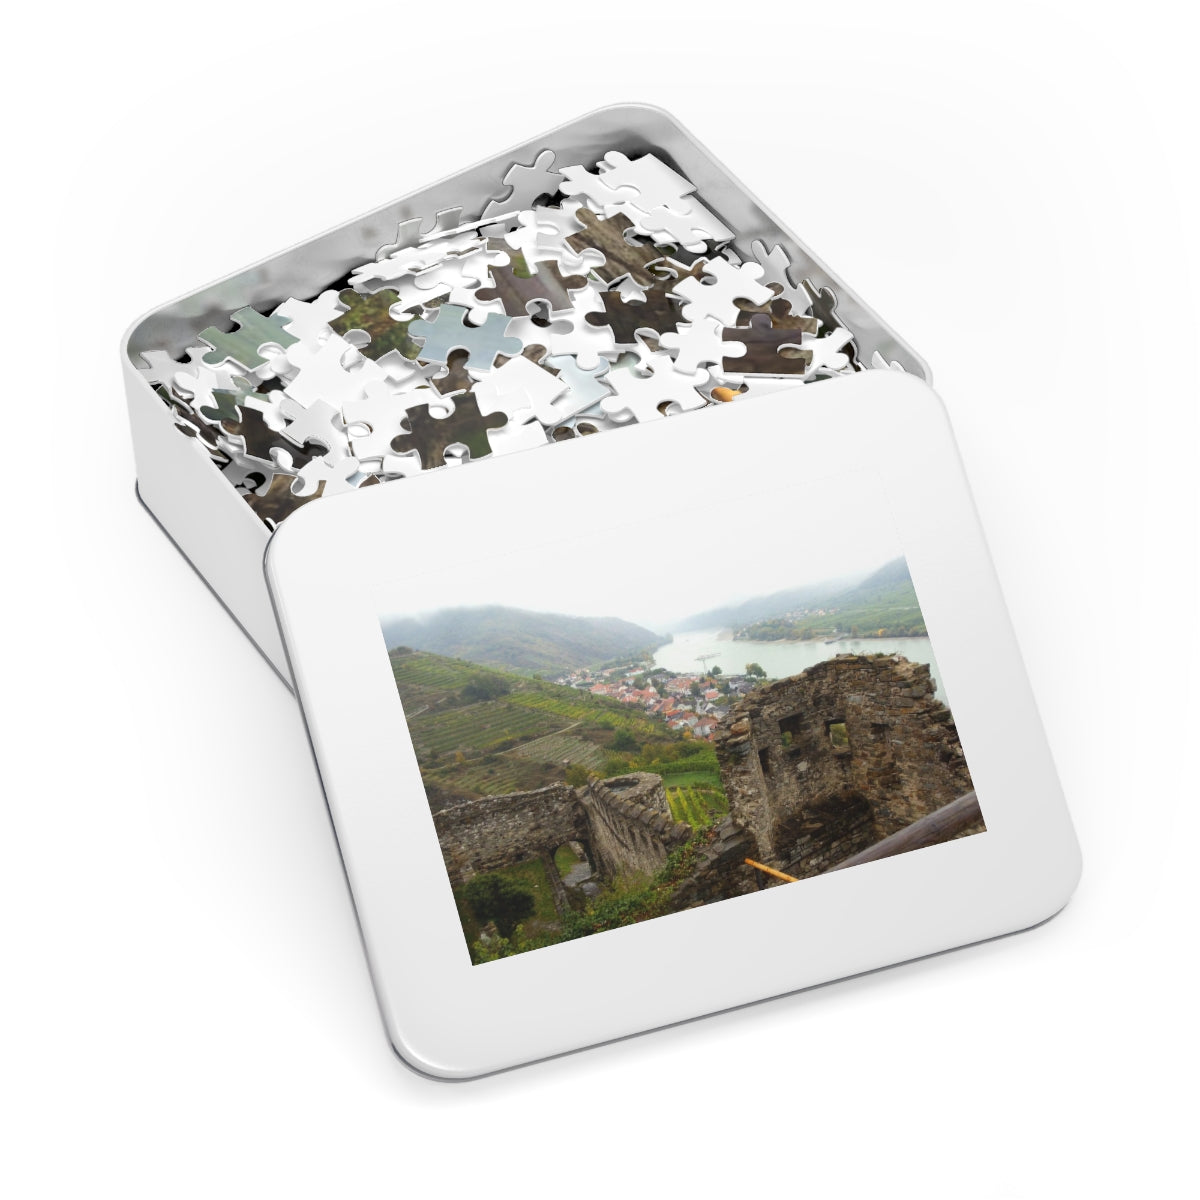 Wachau Austria Jigsaw Puzzle (30, 110, 252, 500,1000-Piece)